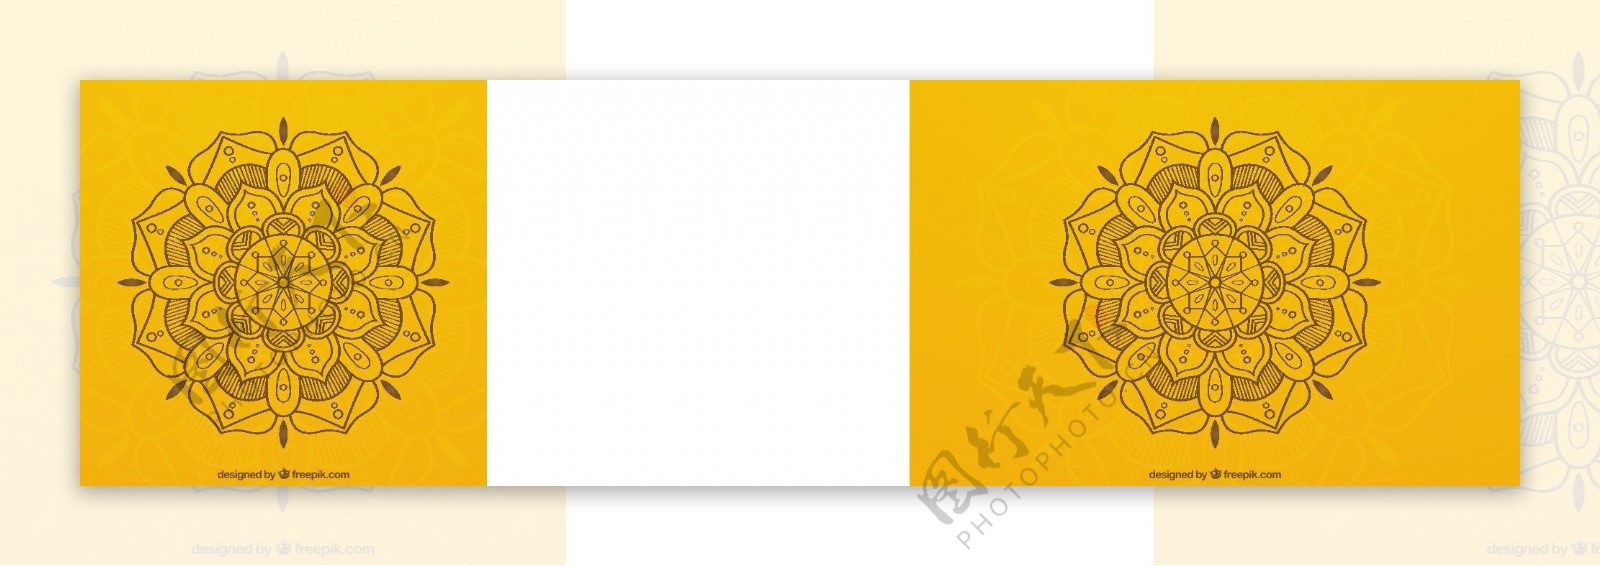 手绘曼陀罗花纹图案黄色背景